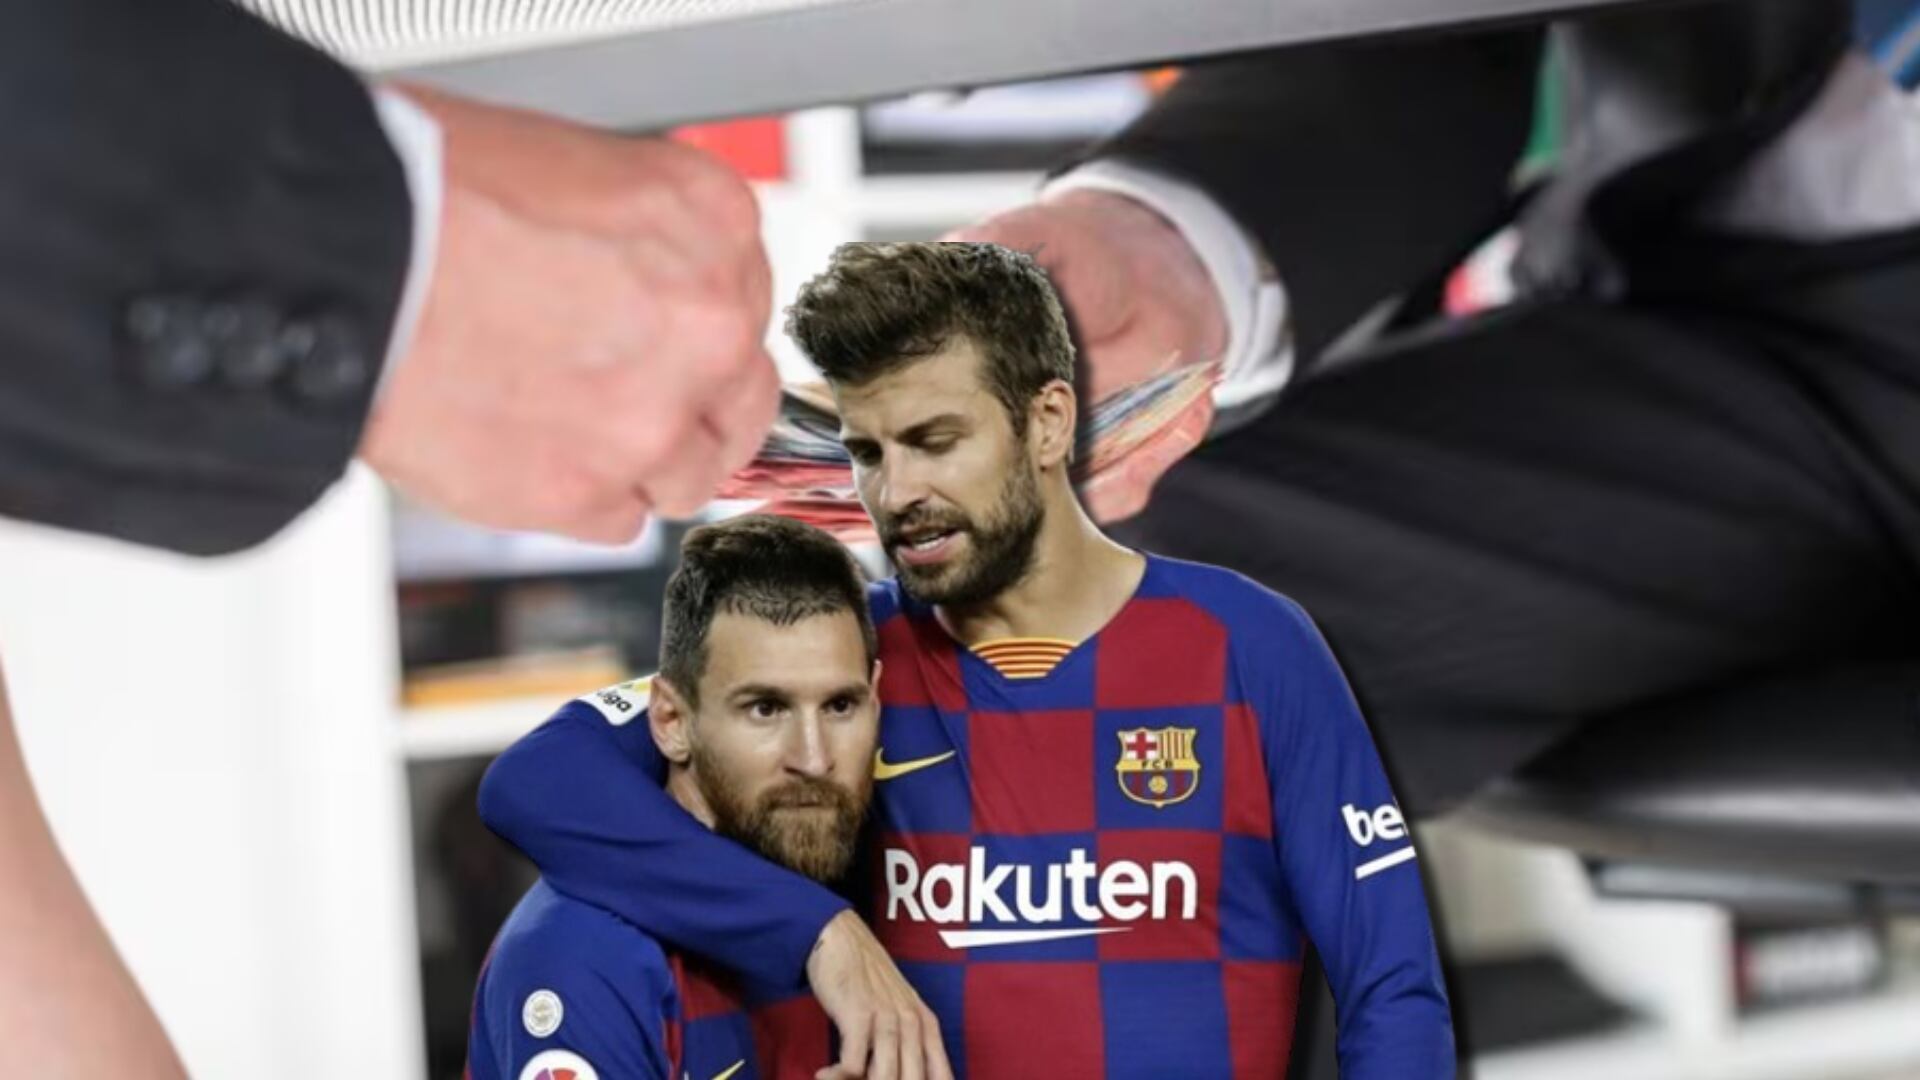 Si comprueban que Messi y Piqué desviaron fondos, tendrían esta fuerte condena